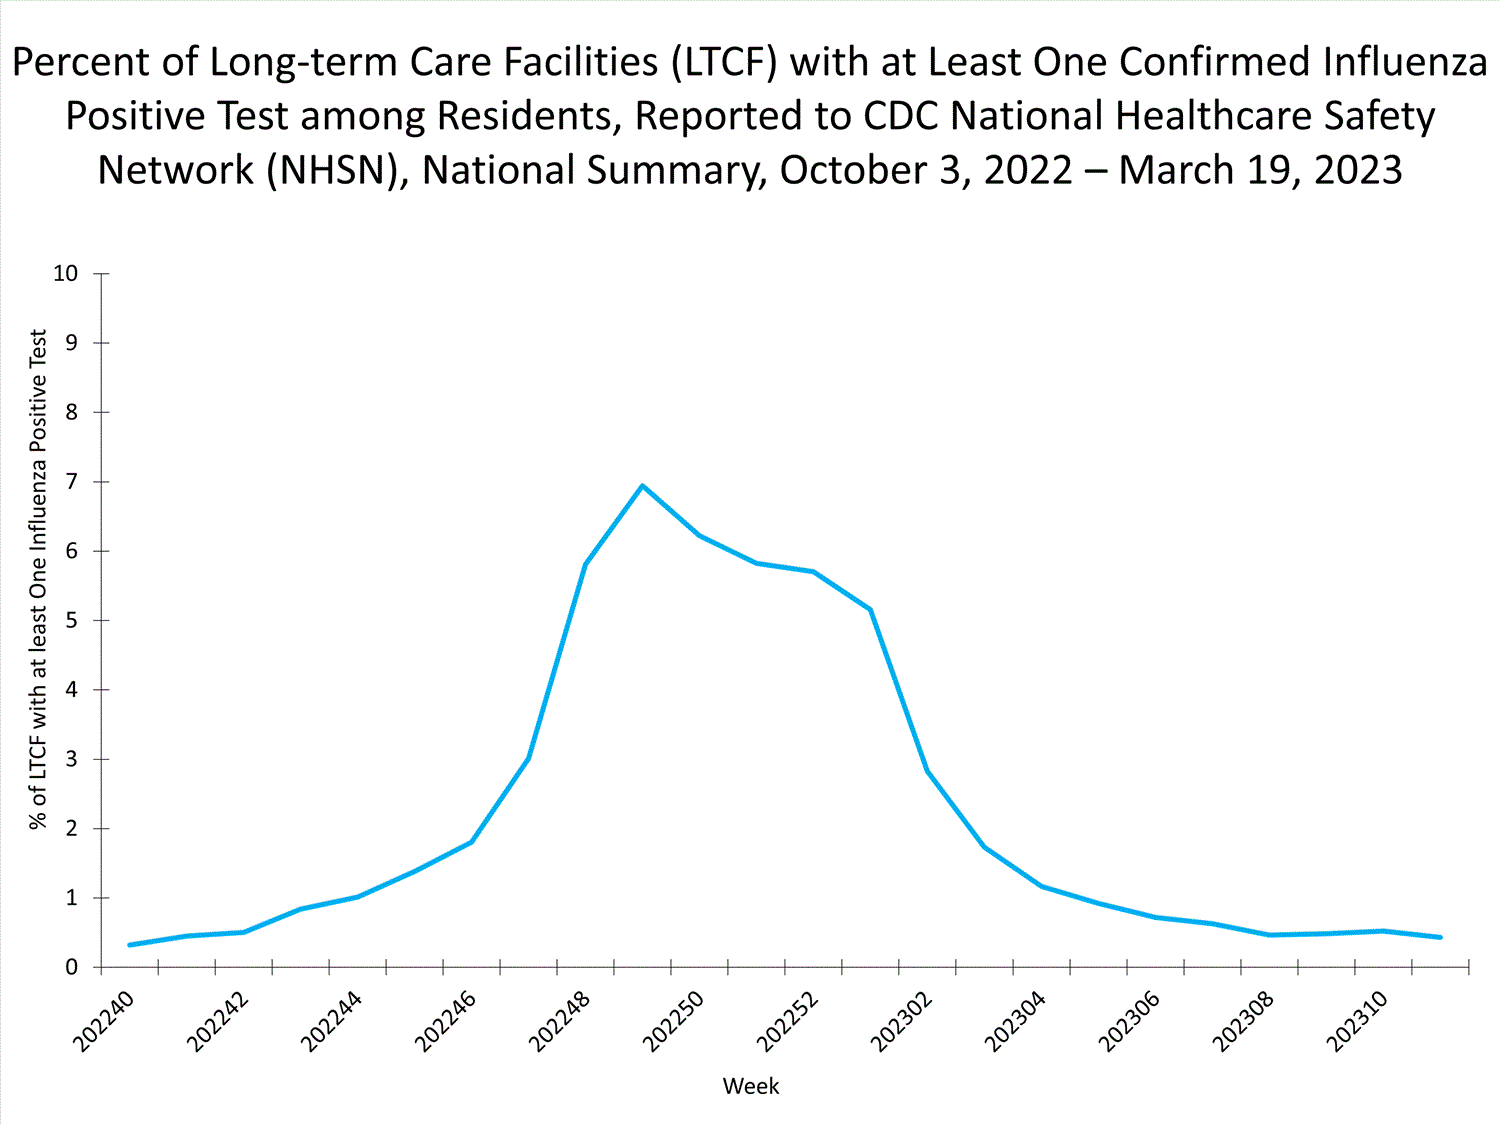 niveles nacionales de influenza en ltcf